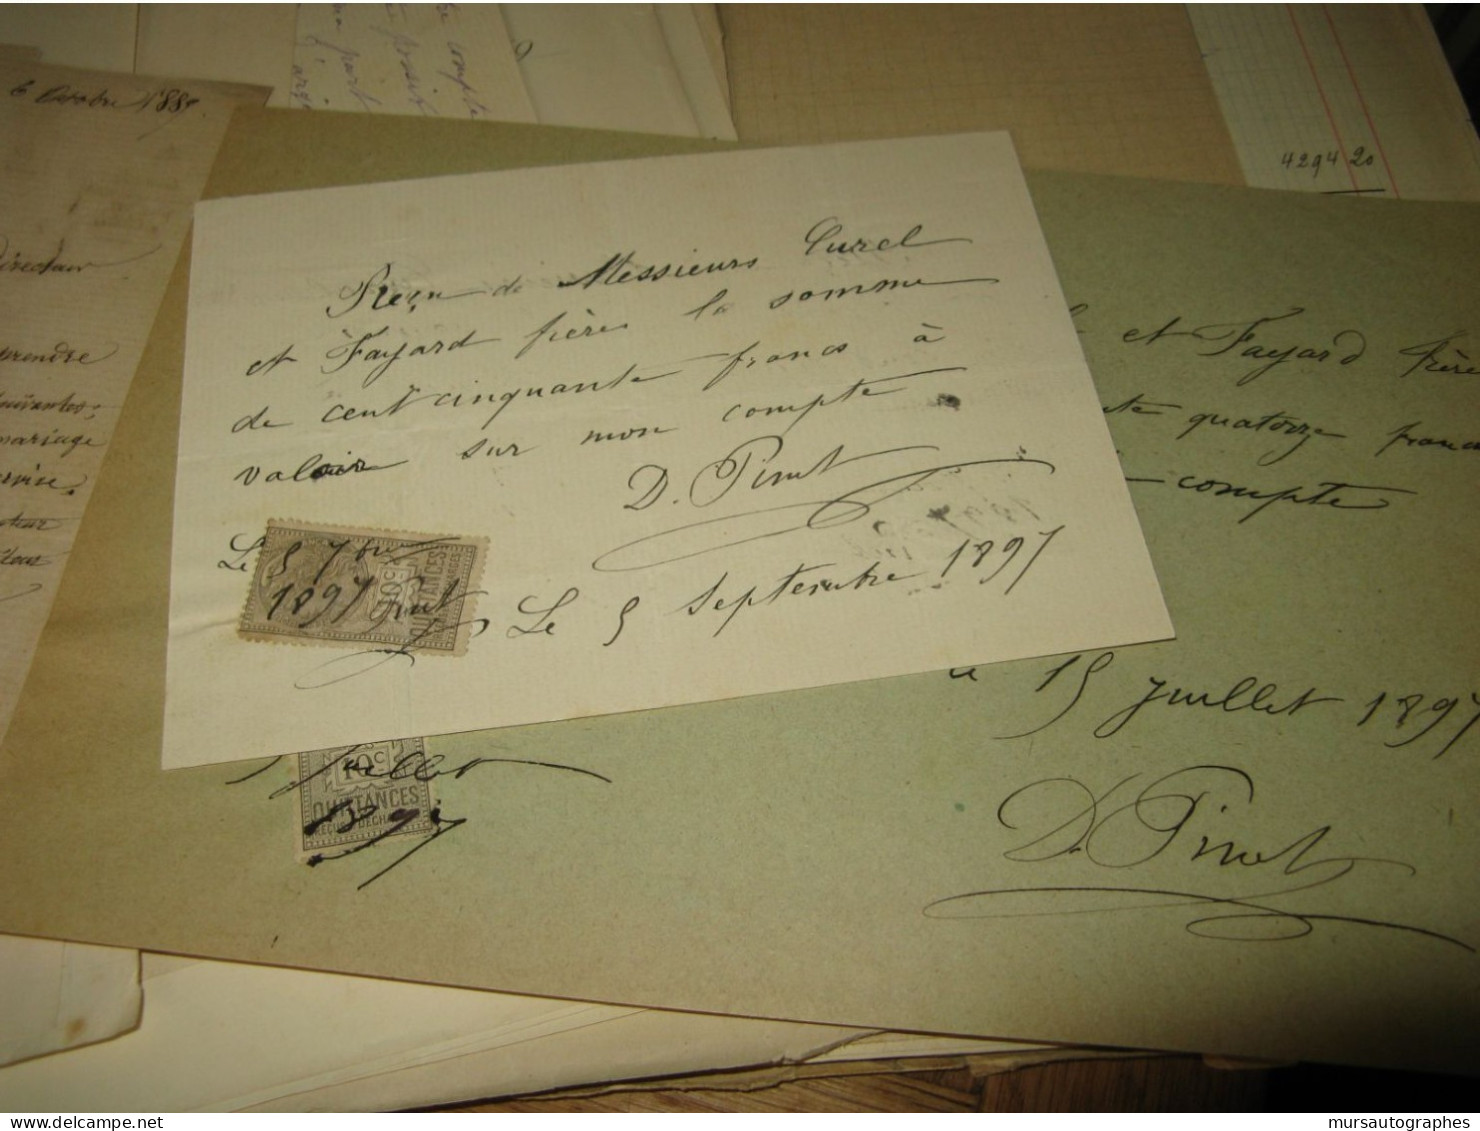 AUGUSTE DEBAY 2X Autographe Signé 1885 MEDECIN AUTEUR EROTISME + Dossier à DENTU - Inventors & Scientists